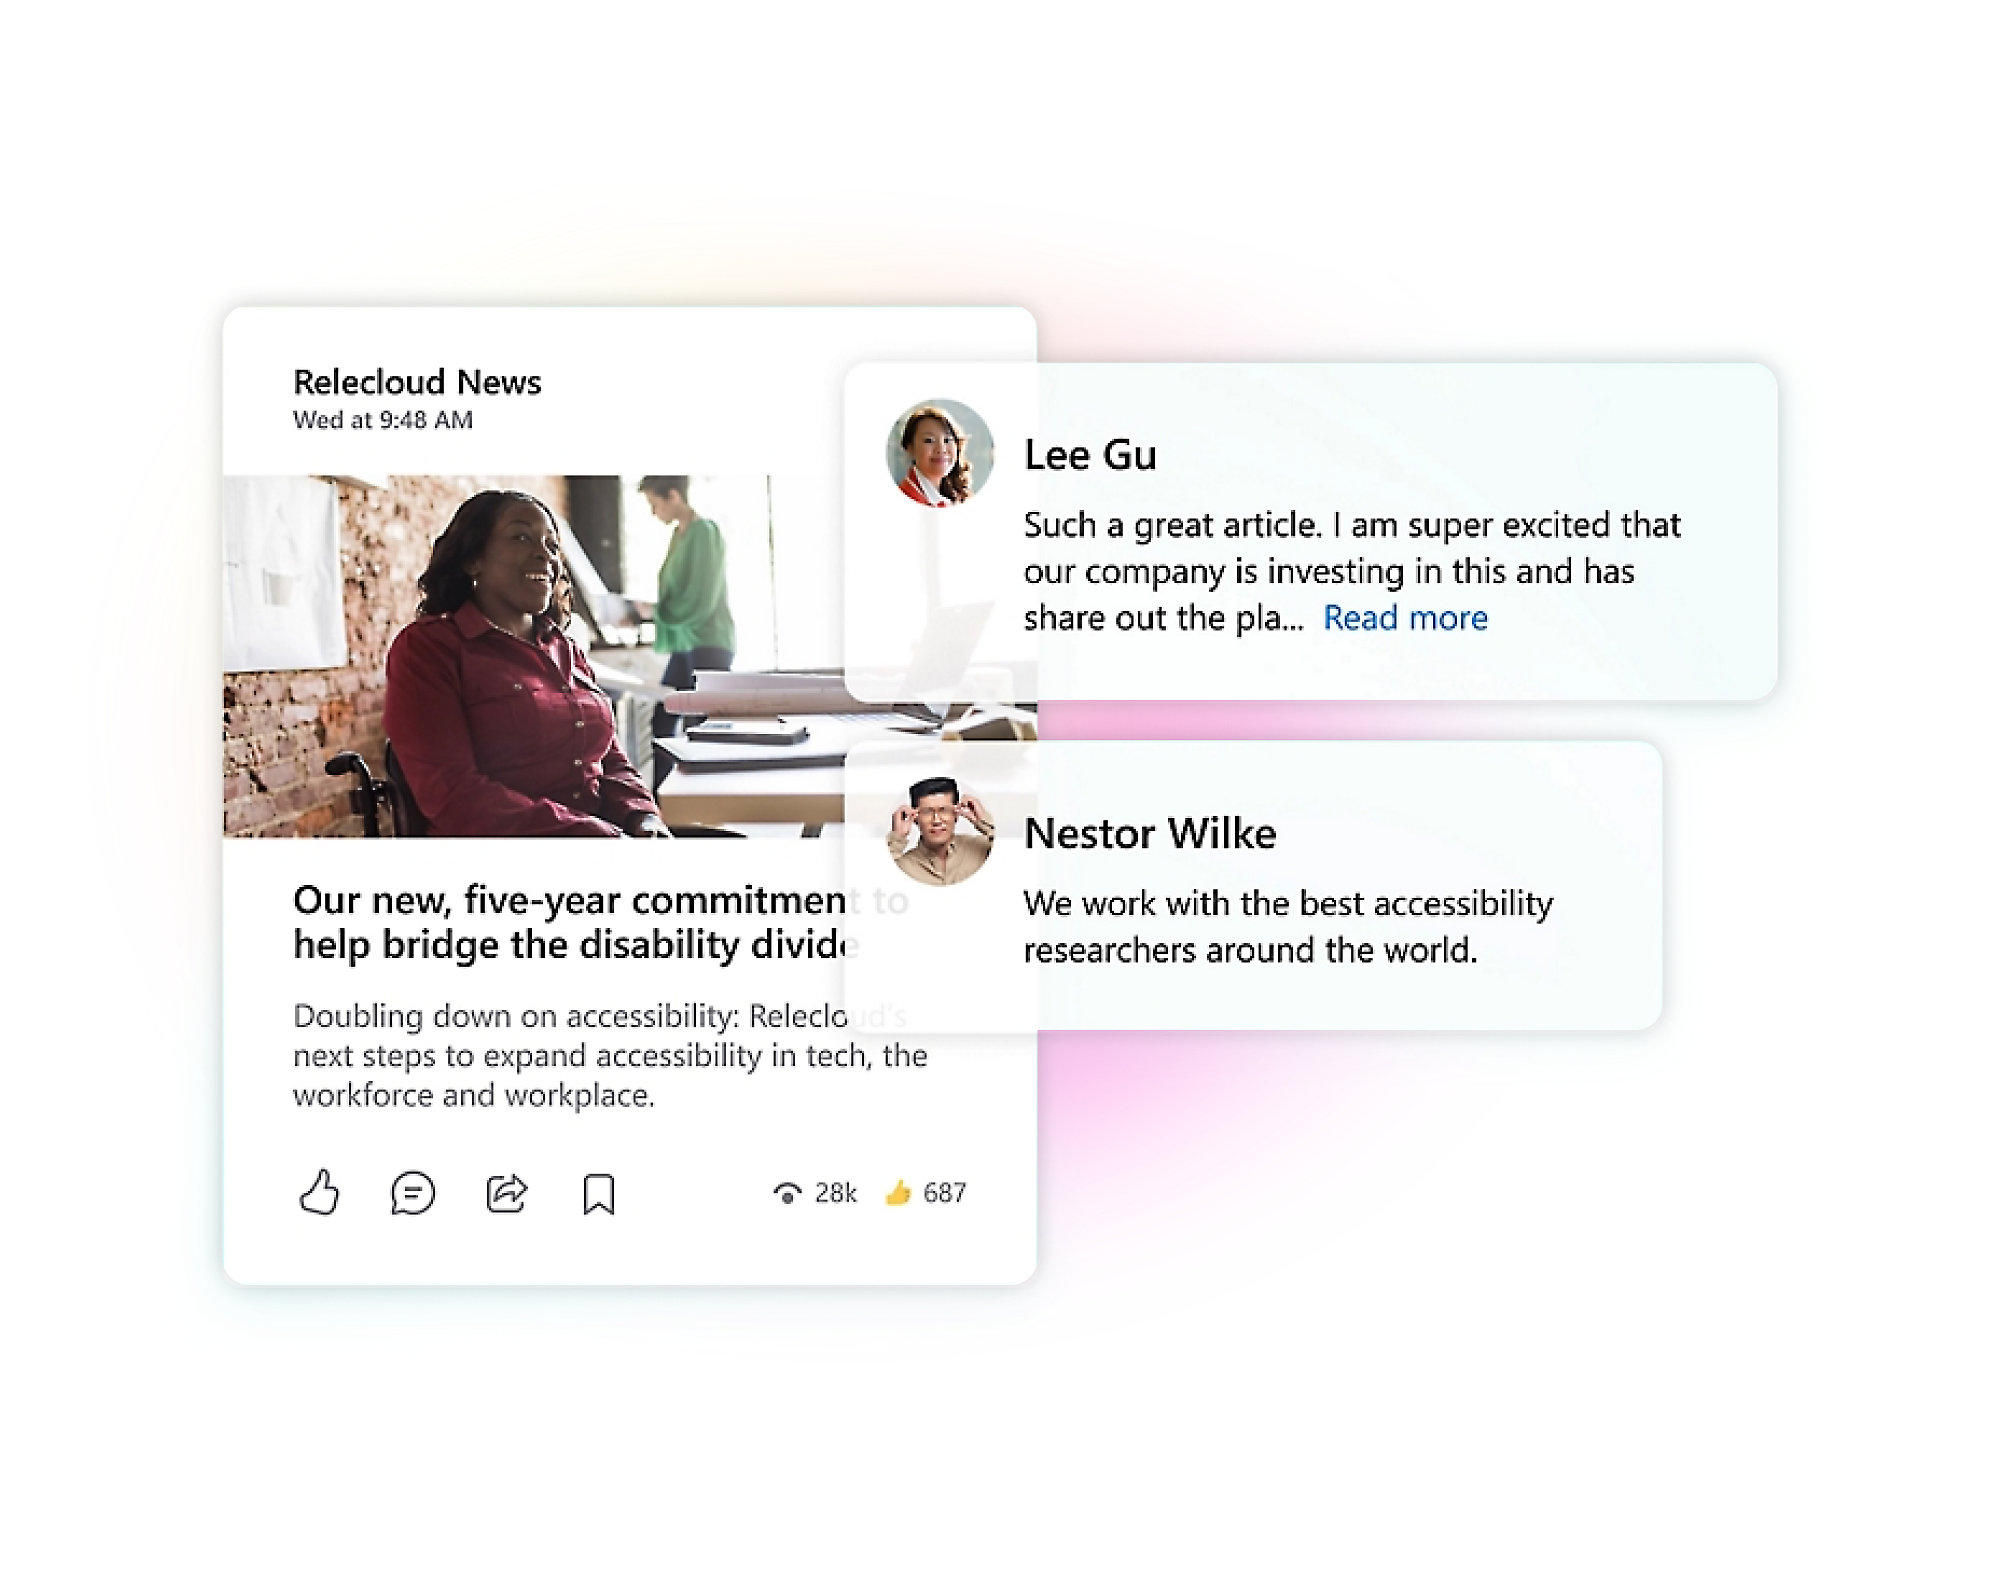 ממשק של אפליקציית מדיה חברתית שמציג פרסומים הקשורים לנגישות ולפתרונות לבעלי לקות במקום העבודה.